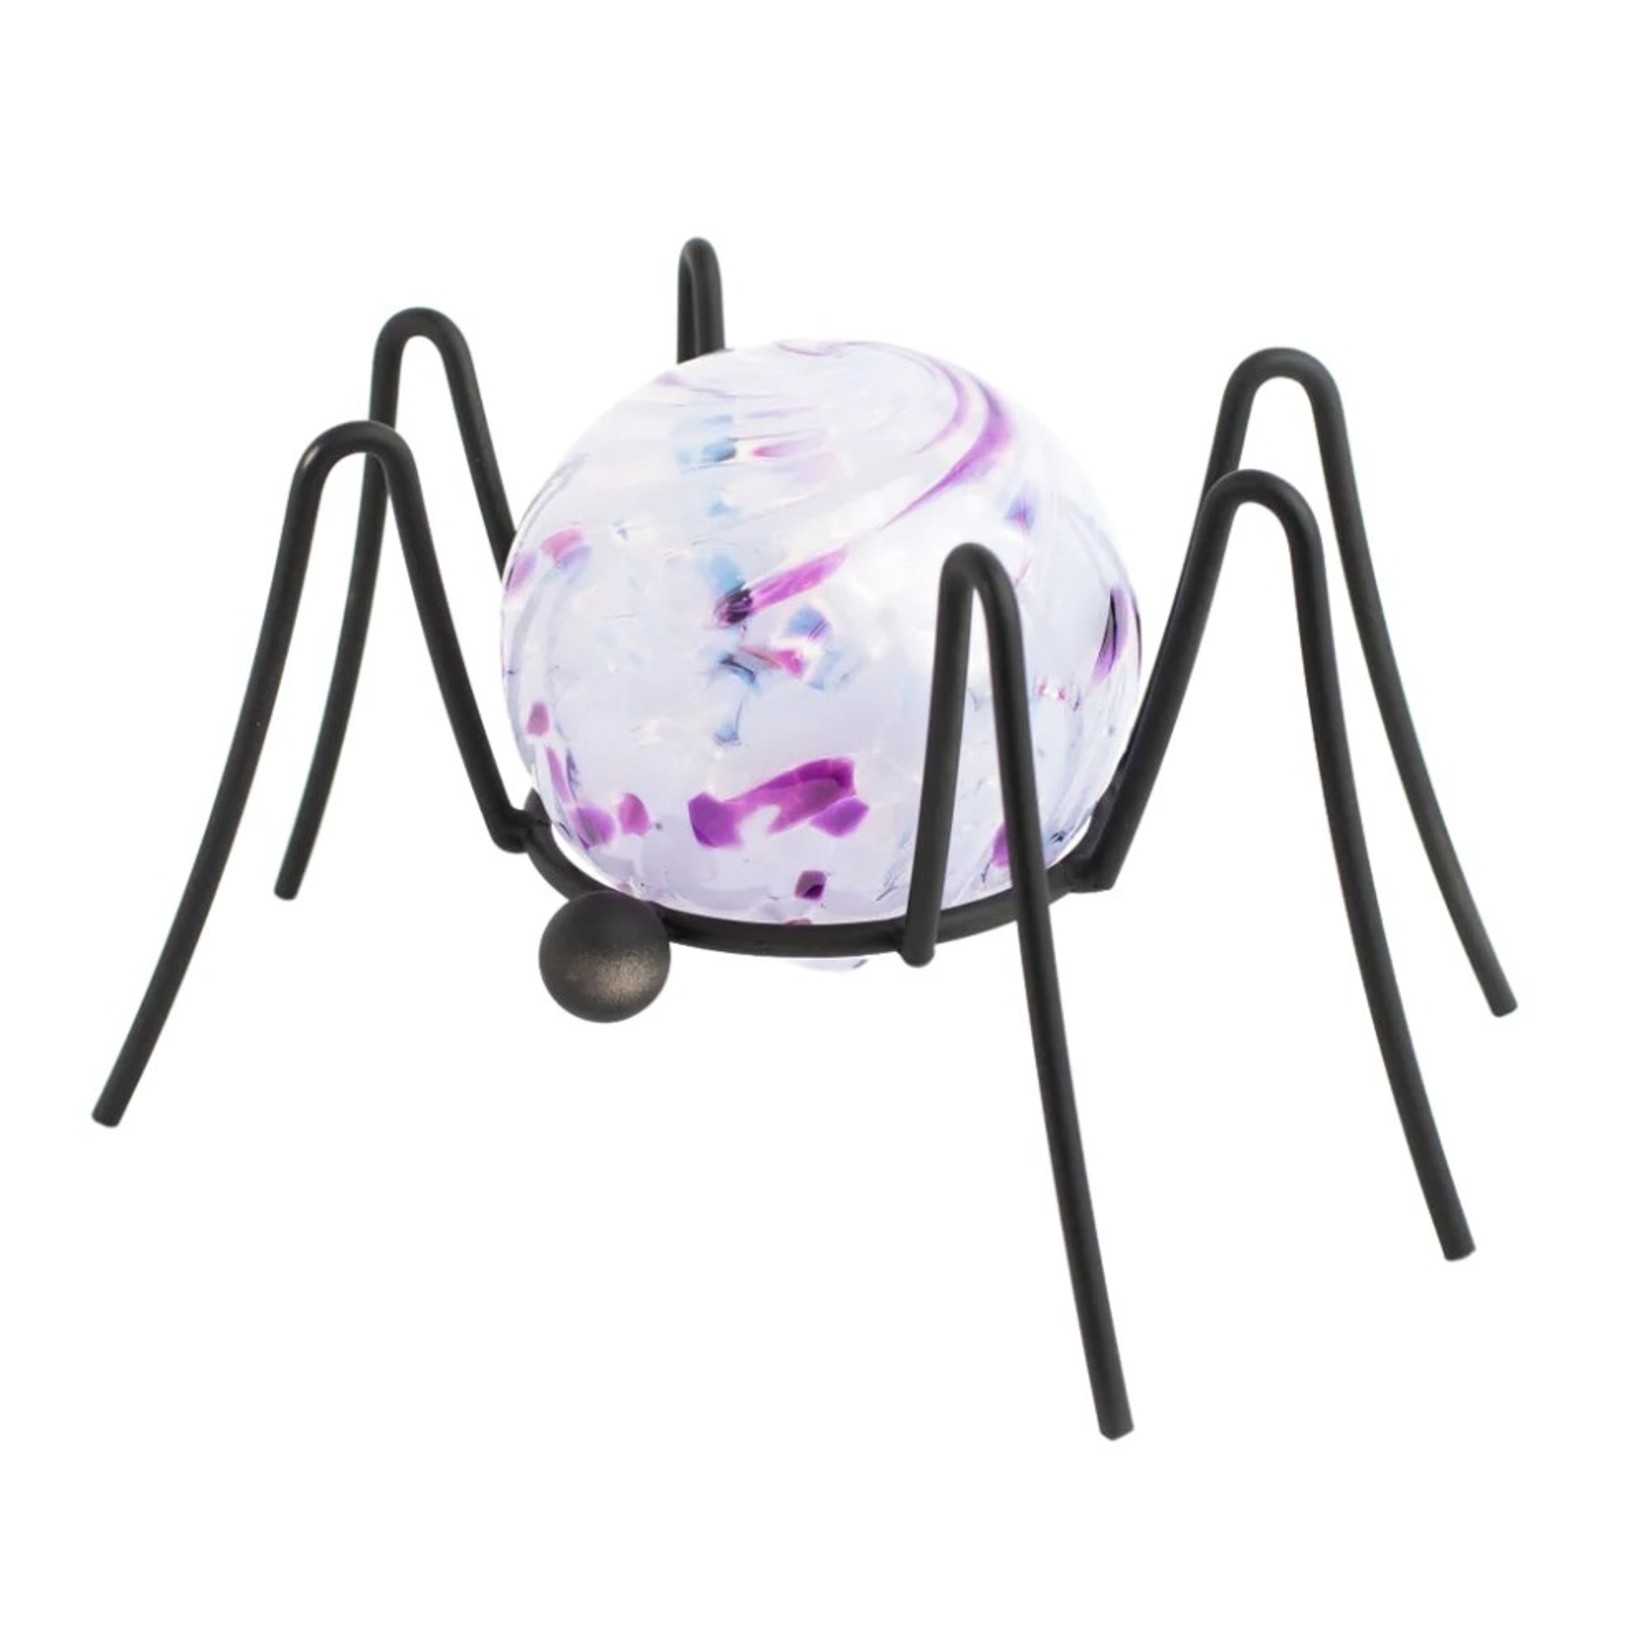 KITRAS Spider Garden Holder